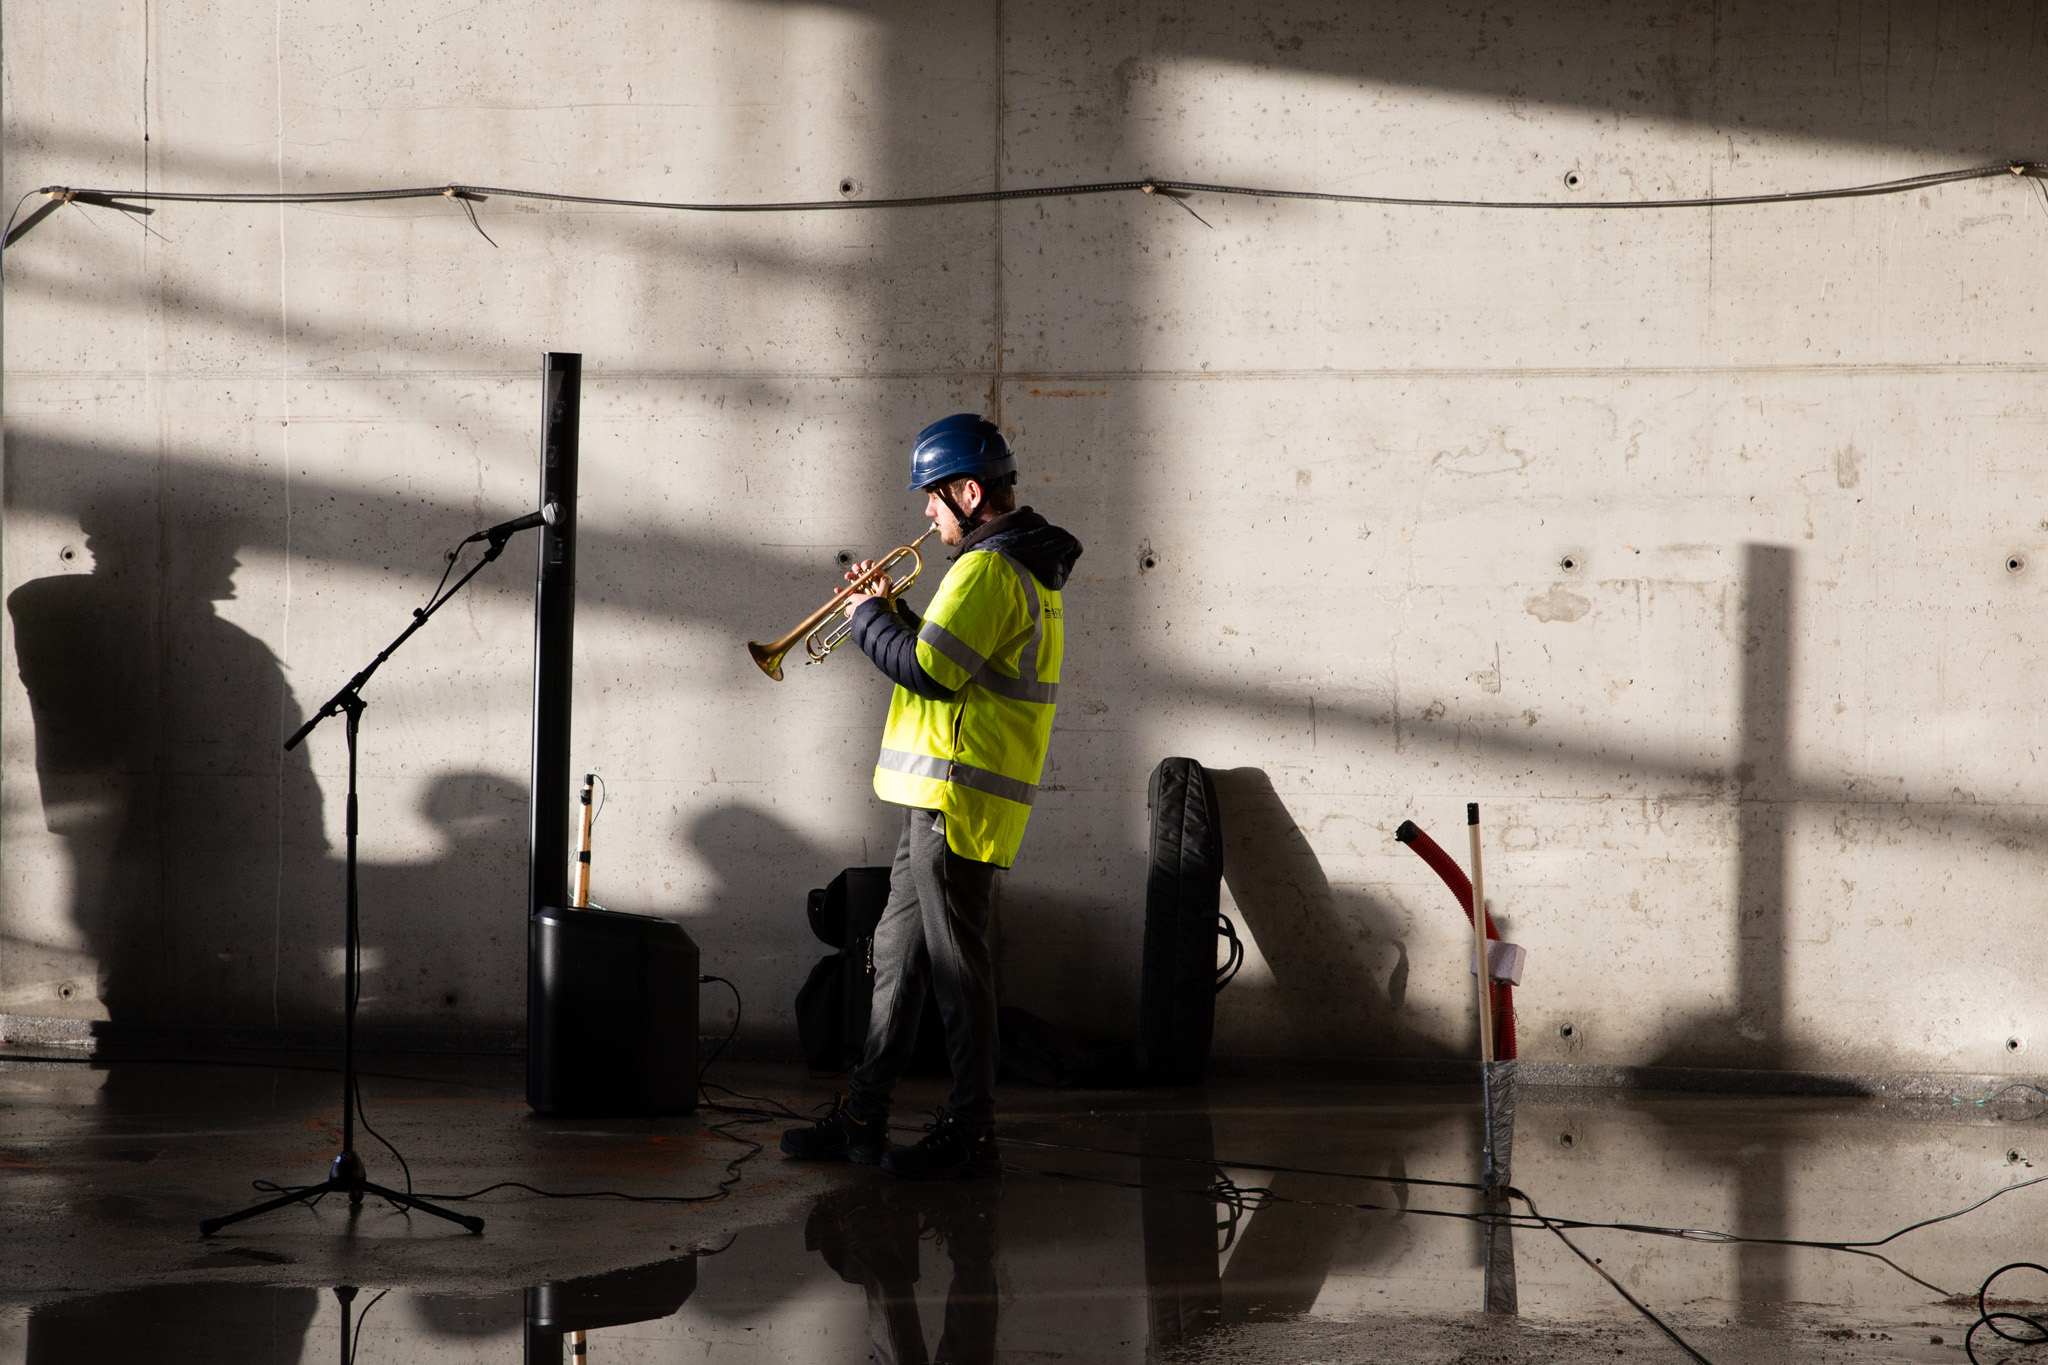 Mann med hjelm og refleksvest spiller trompet i nytt bygg